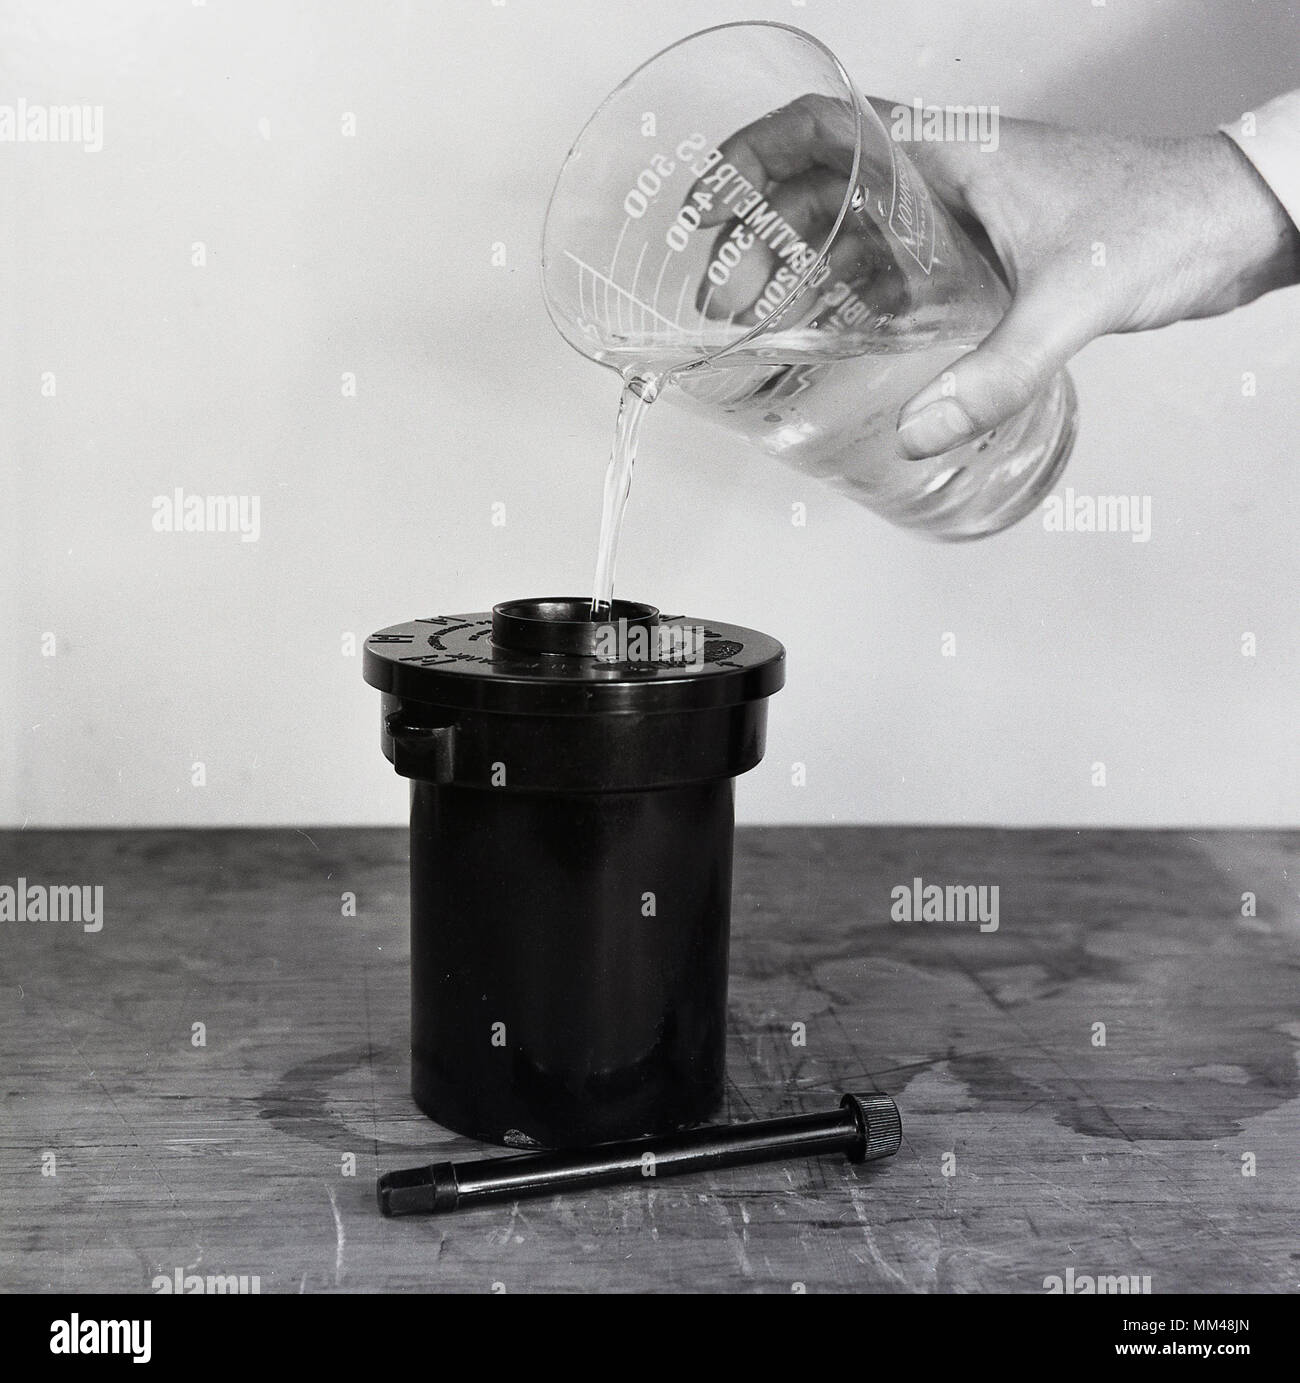 1950, foto histórica mostrando la solución química que se agrega a un recipiente para desarrollar la película fotográfica en blanco y negro. Foto de stock